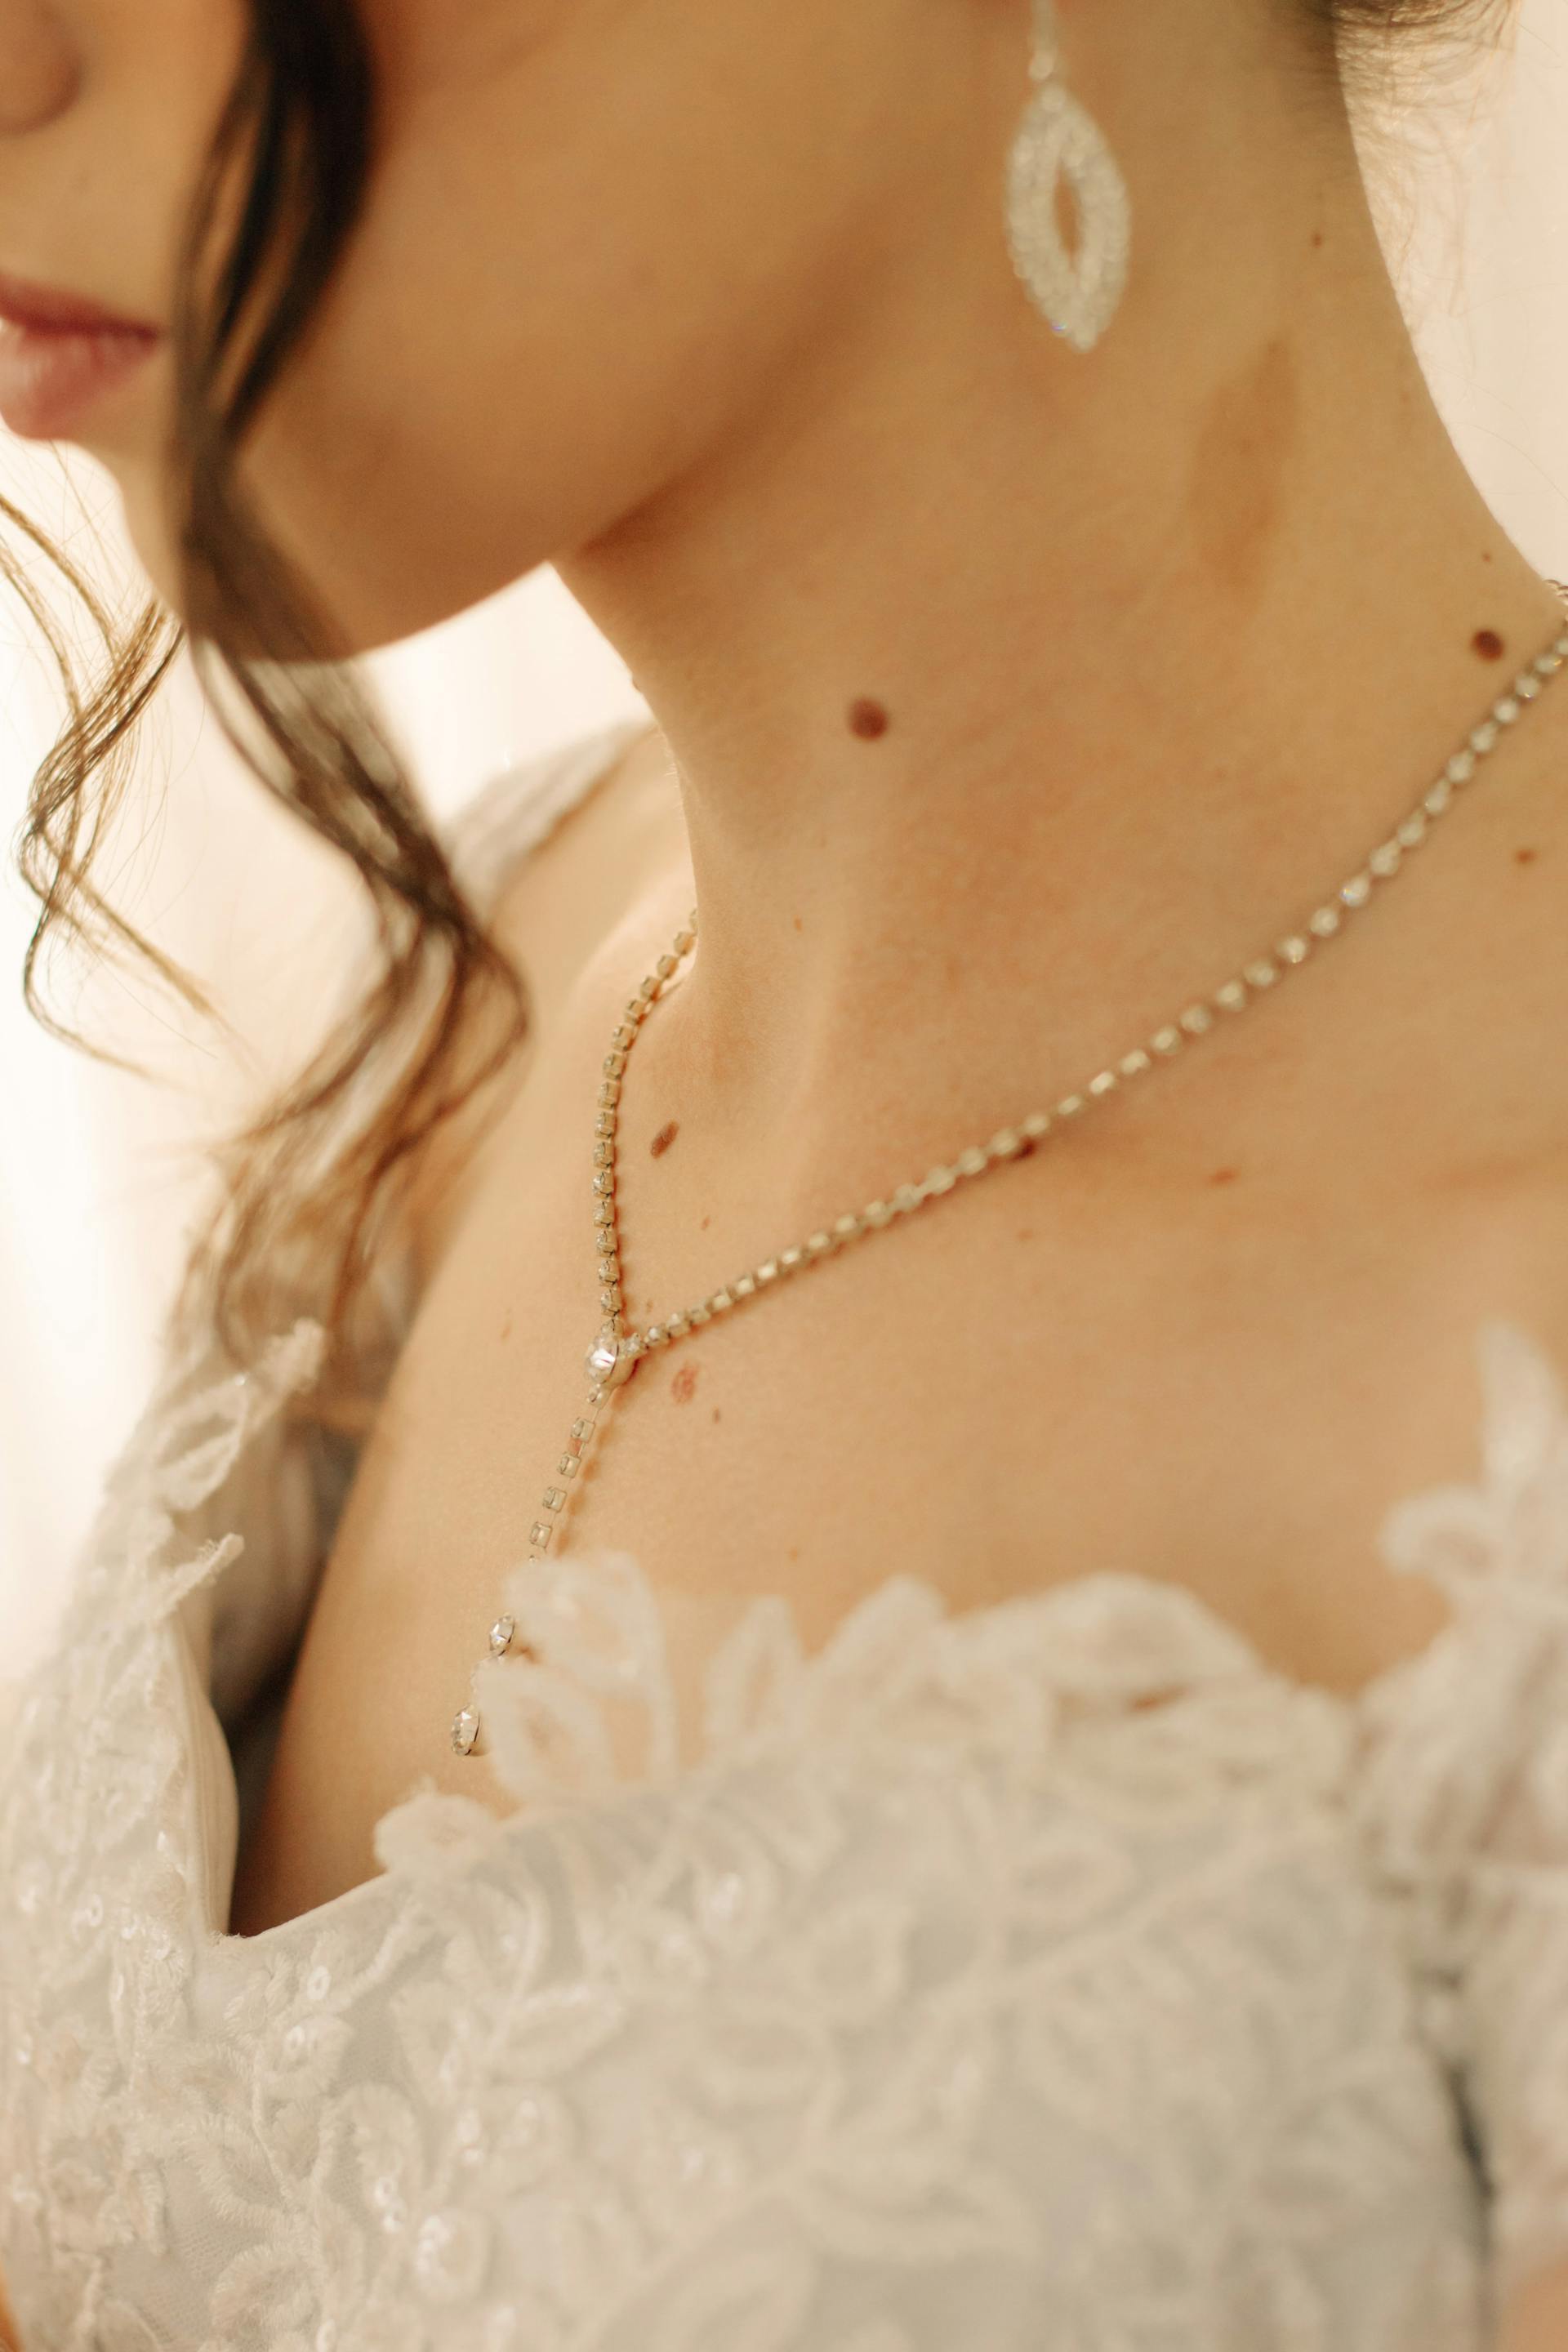 Close-up of a bride | Source: Pexels